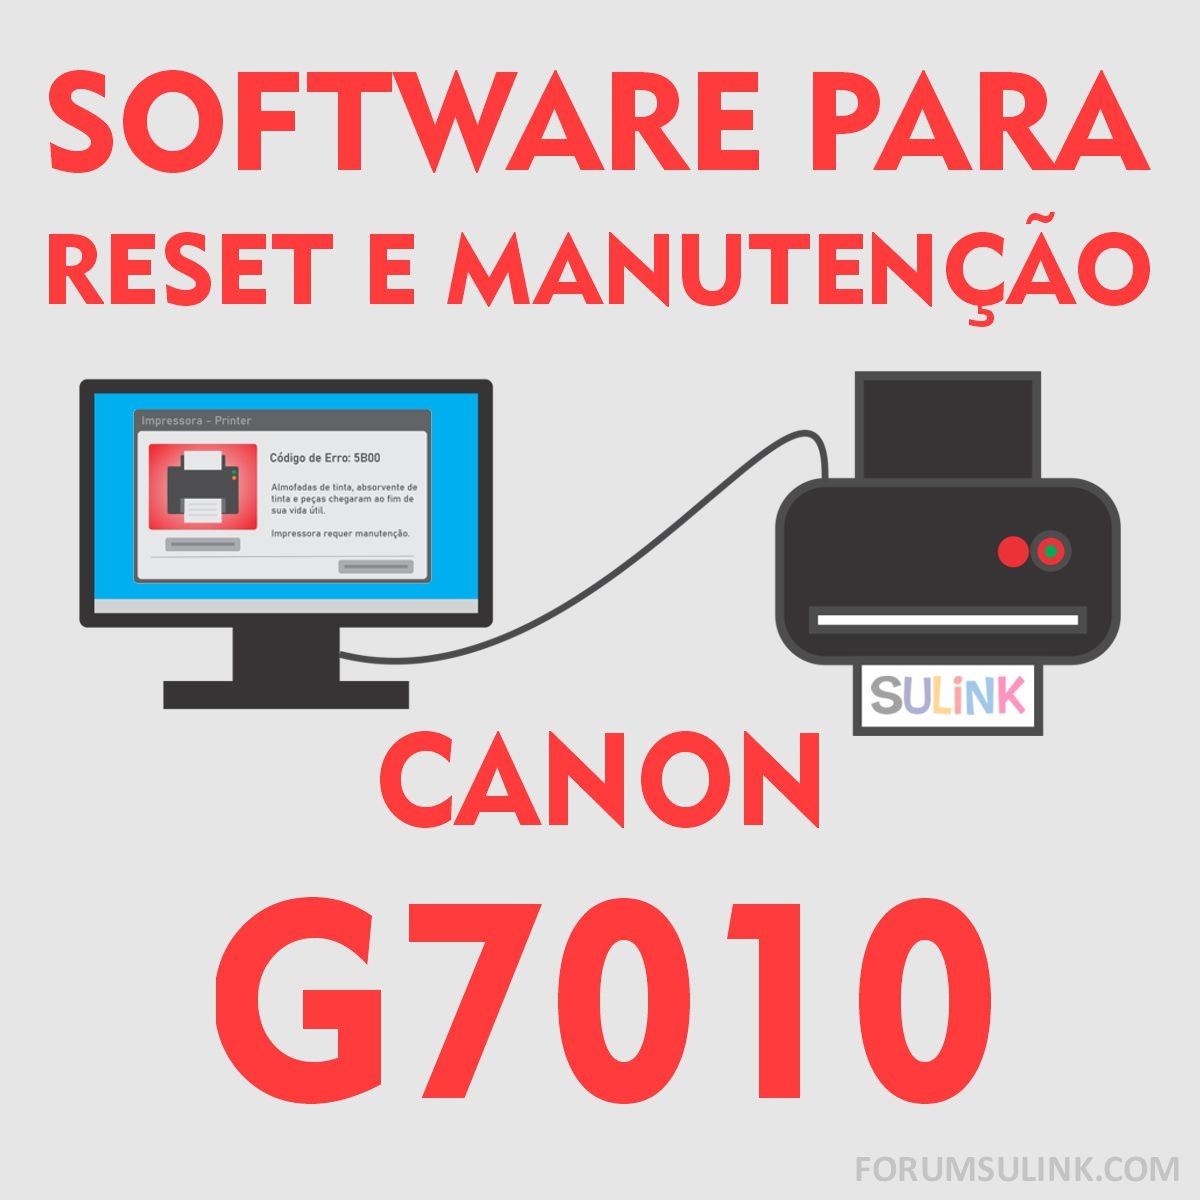 Canon G7010 | Software para Reset das Almofadas e Manutenção